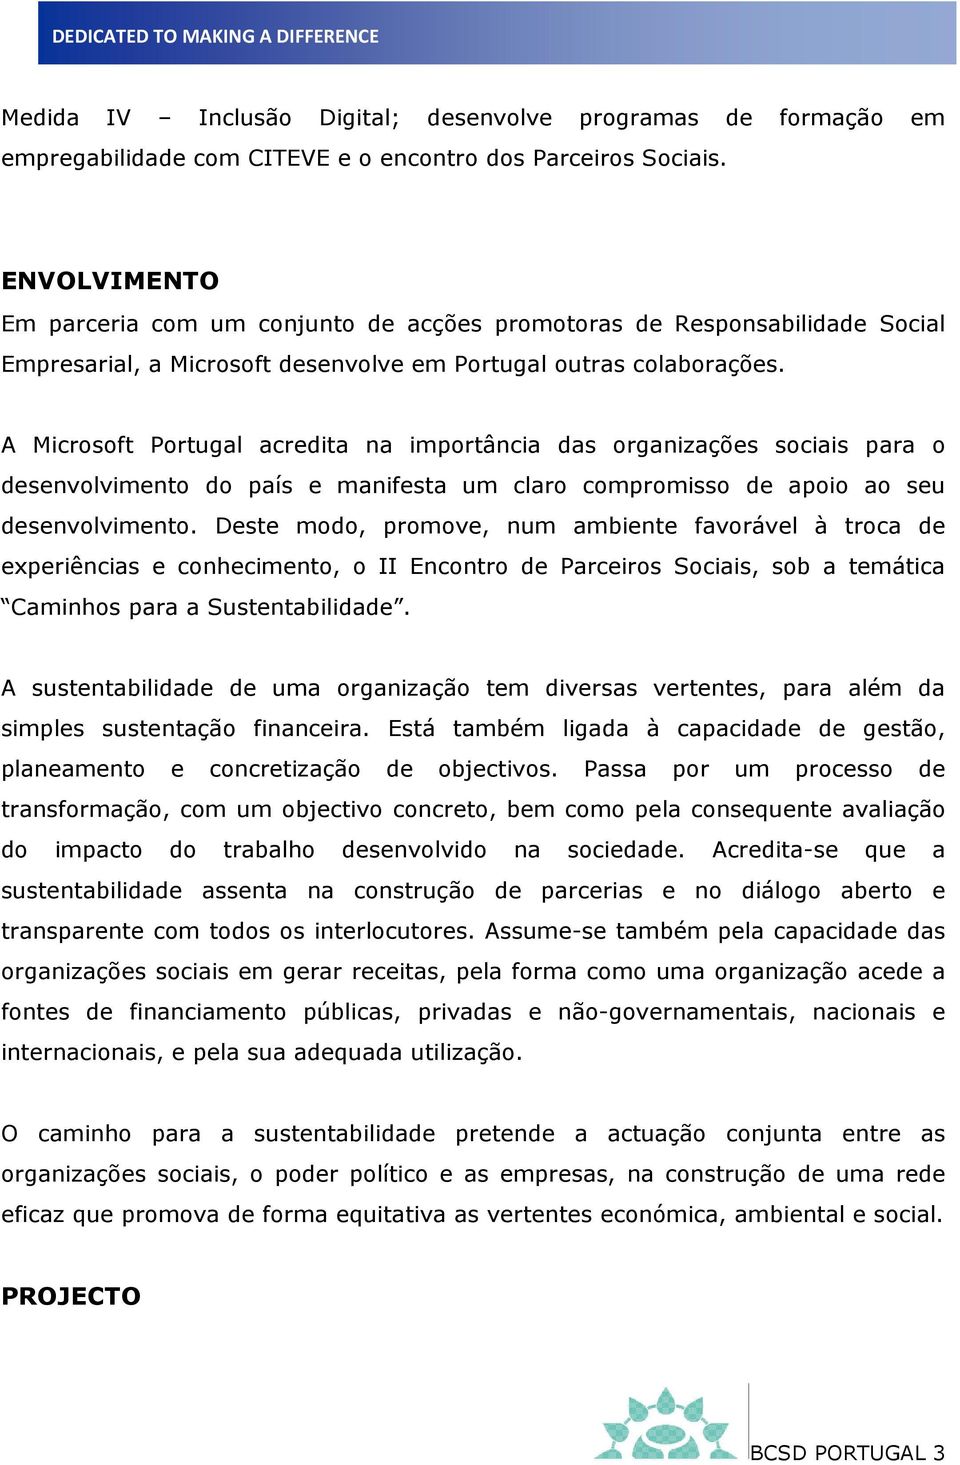 A Microsoft Portugal acredita na importância das organizações sociais para o desenvolvimento do país e manifesta um claro compromisso de apoio ao seu desenvolvimento.